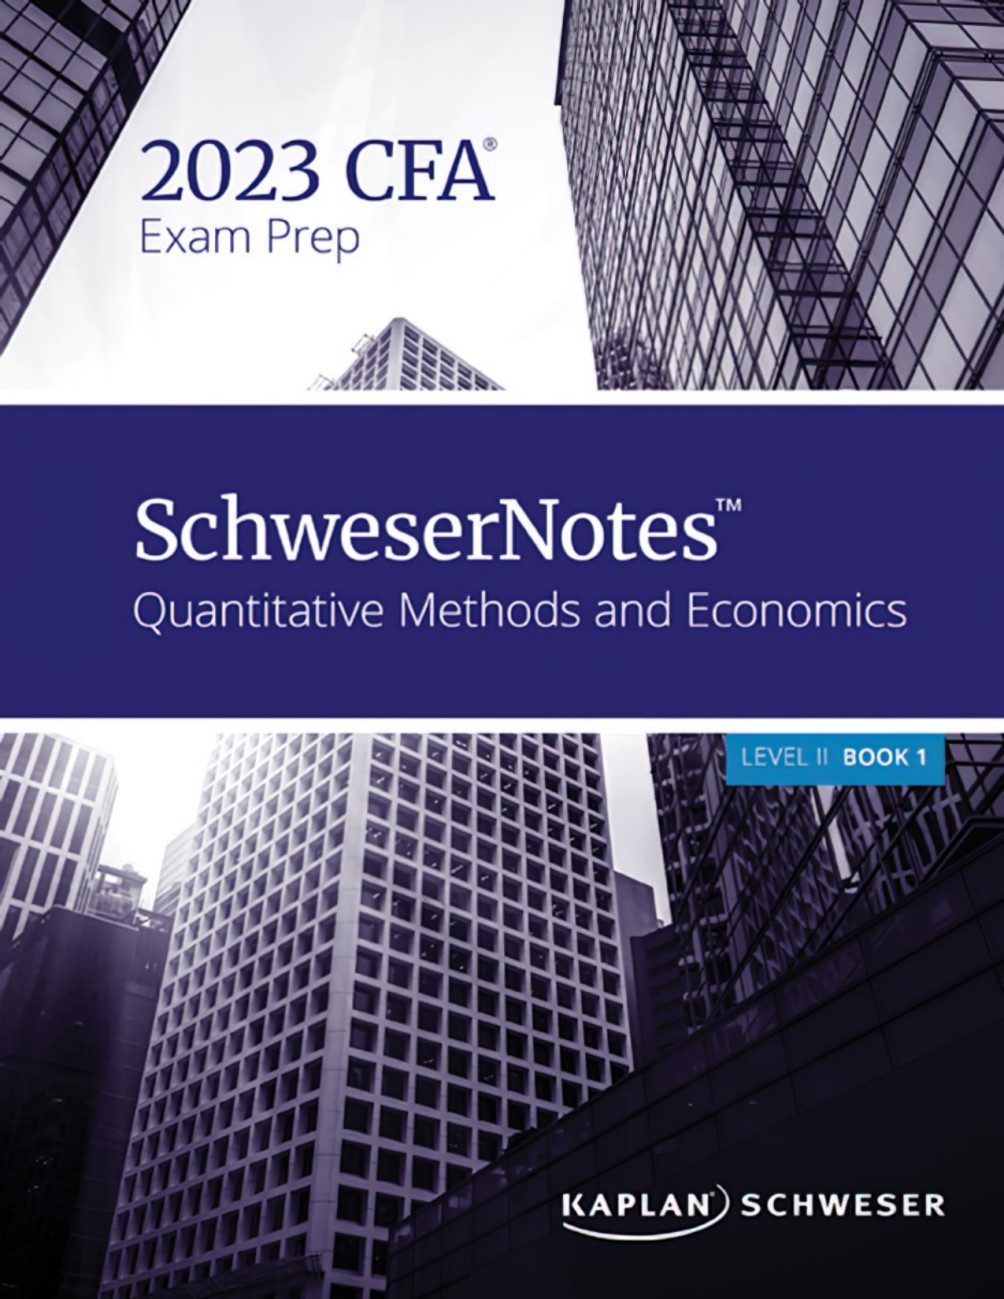 Provide cfa level 2 kaplan schweser notes for 2023 by Cbgomes | Fiverr